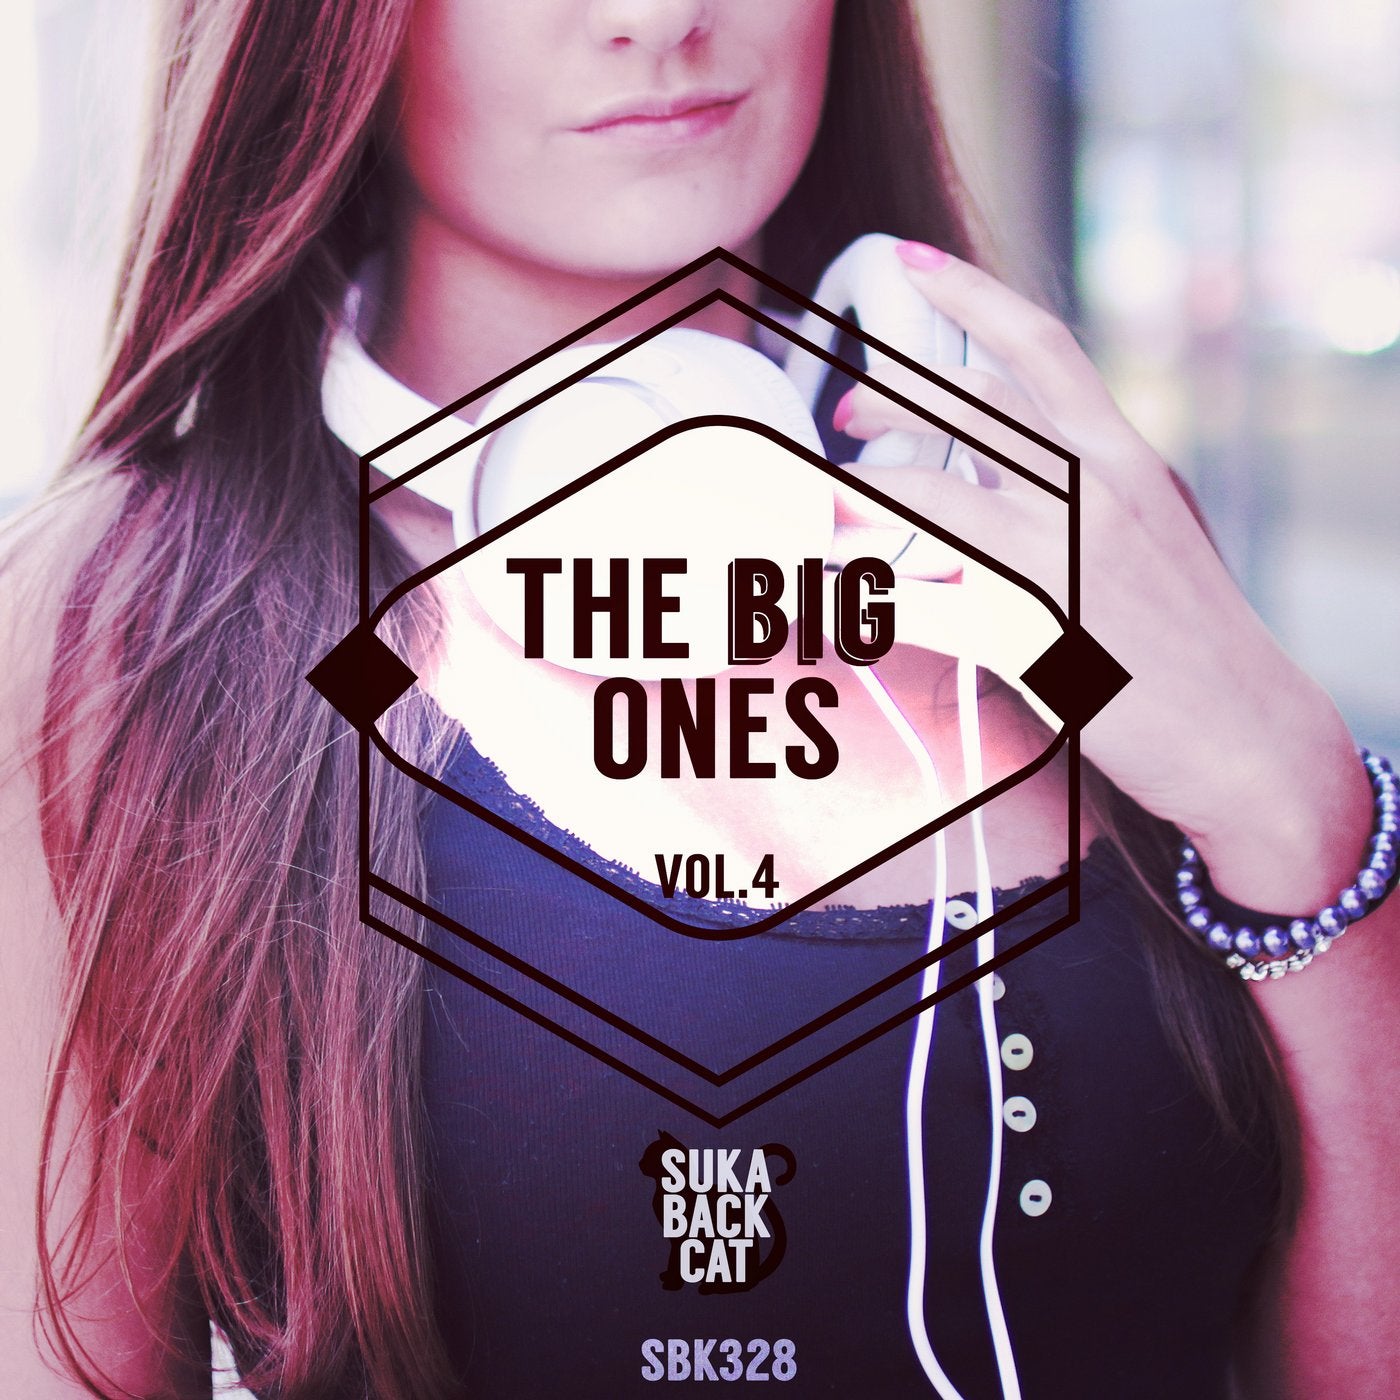 The Big Ones, Vol. 4